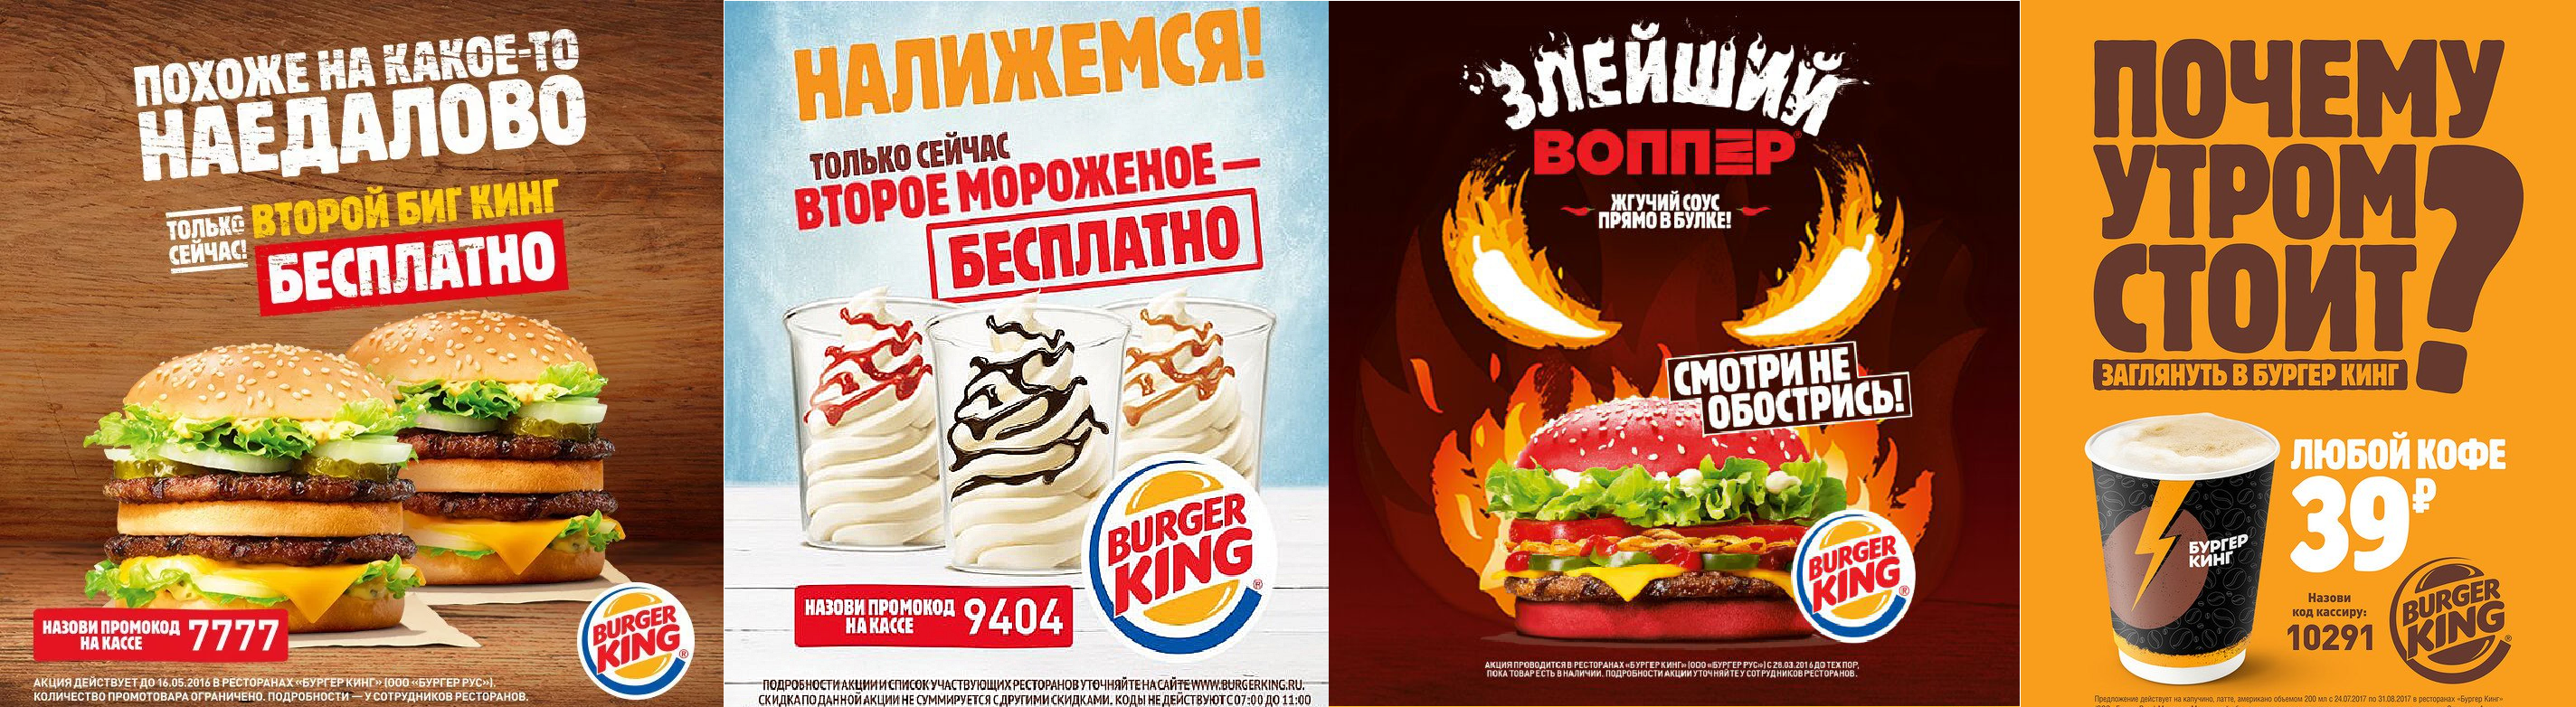 Мак и бургер Кинг реклама